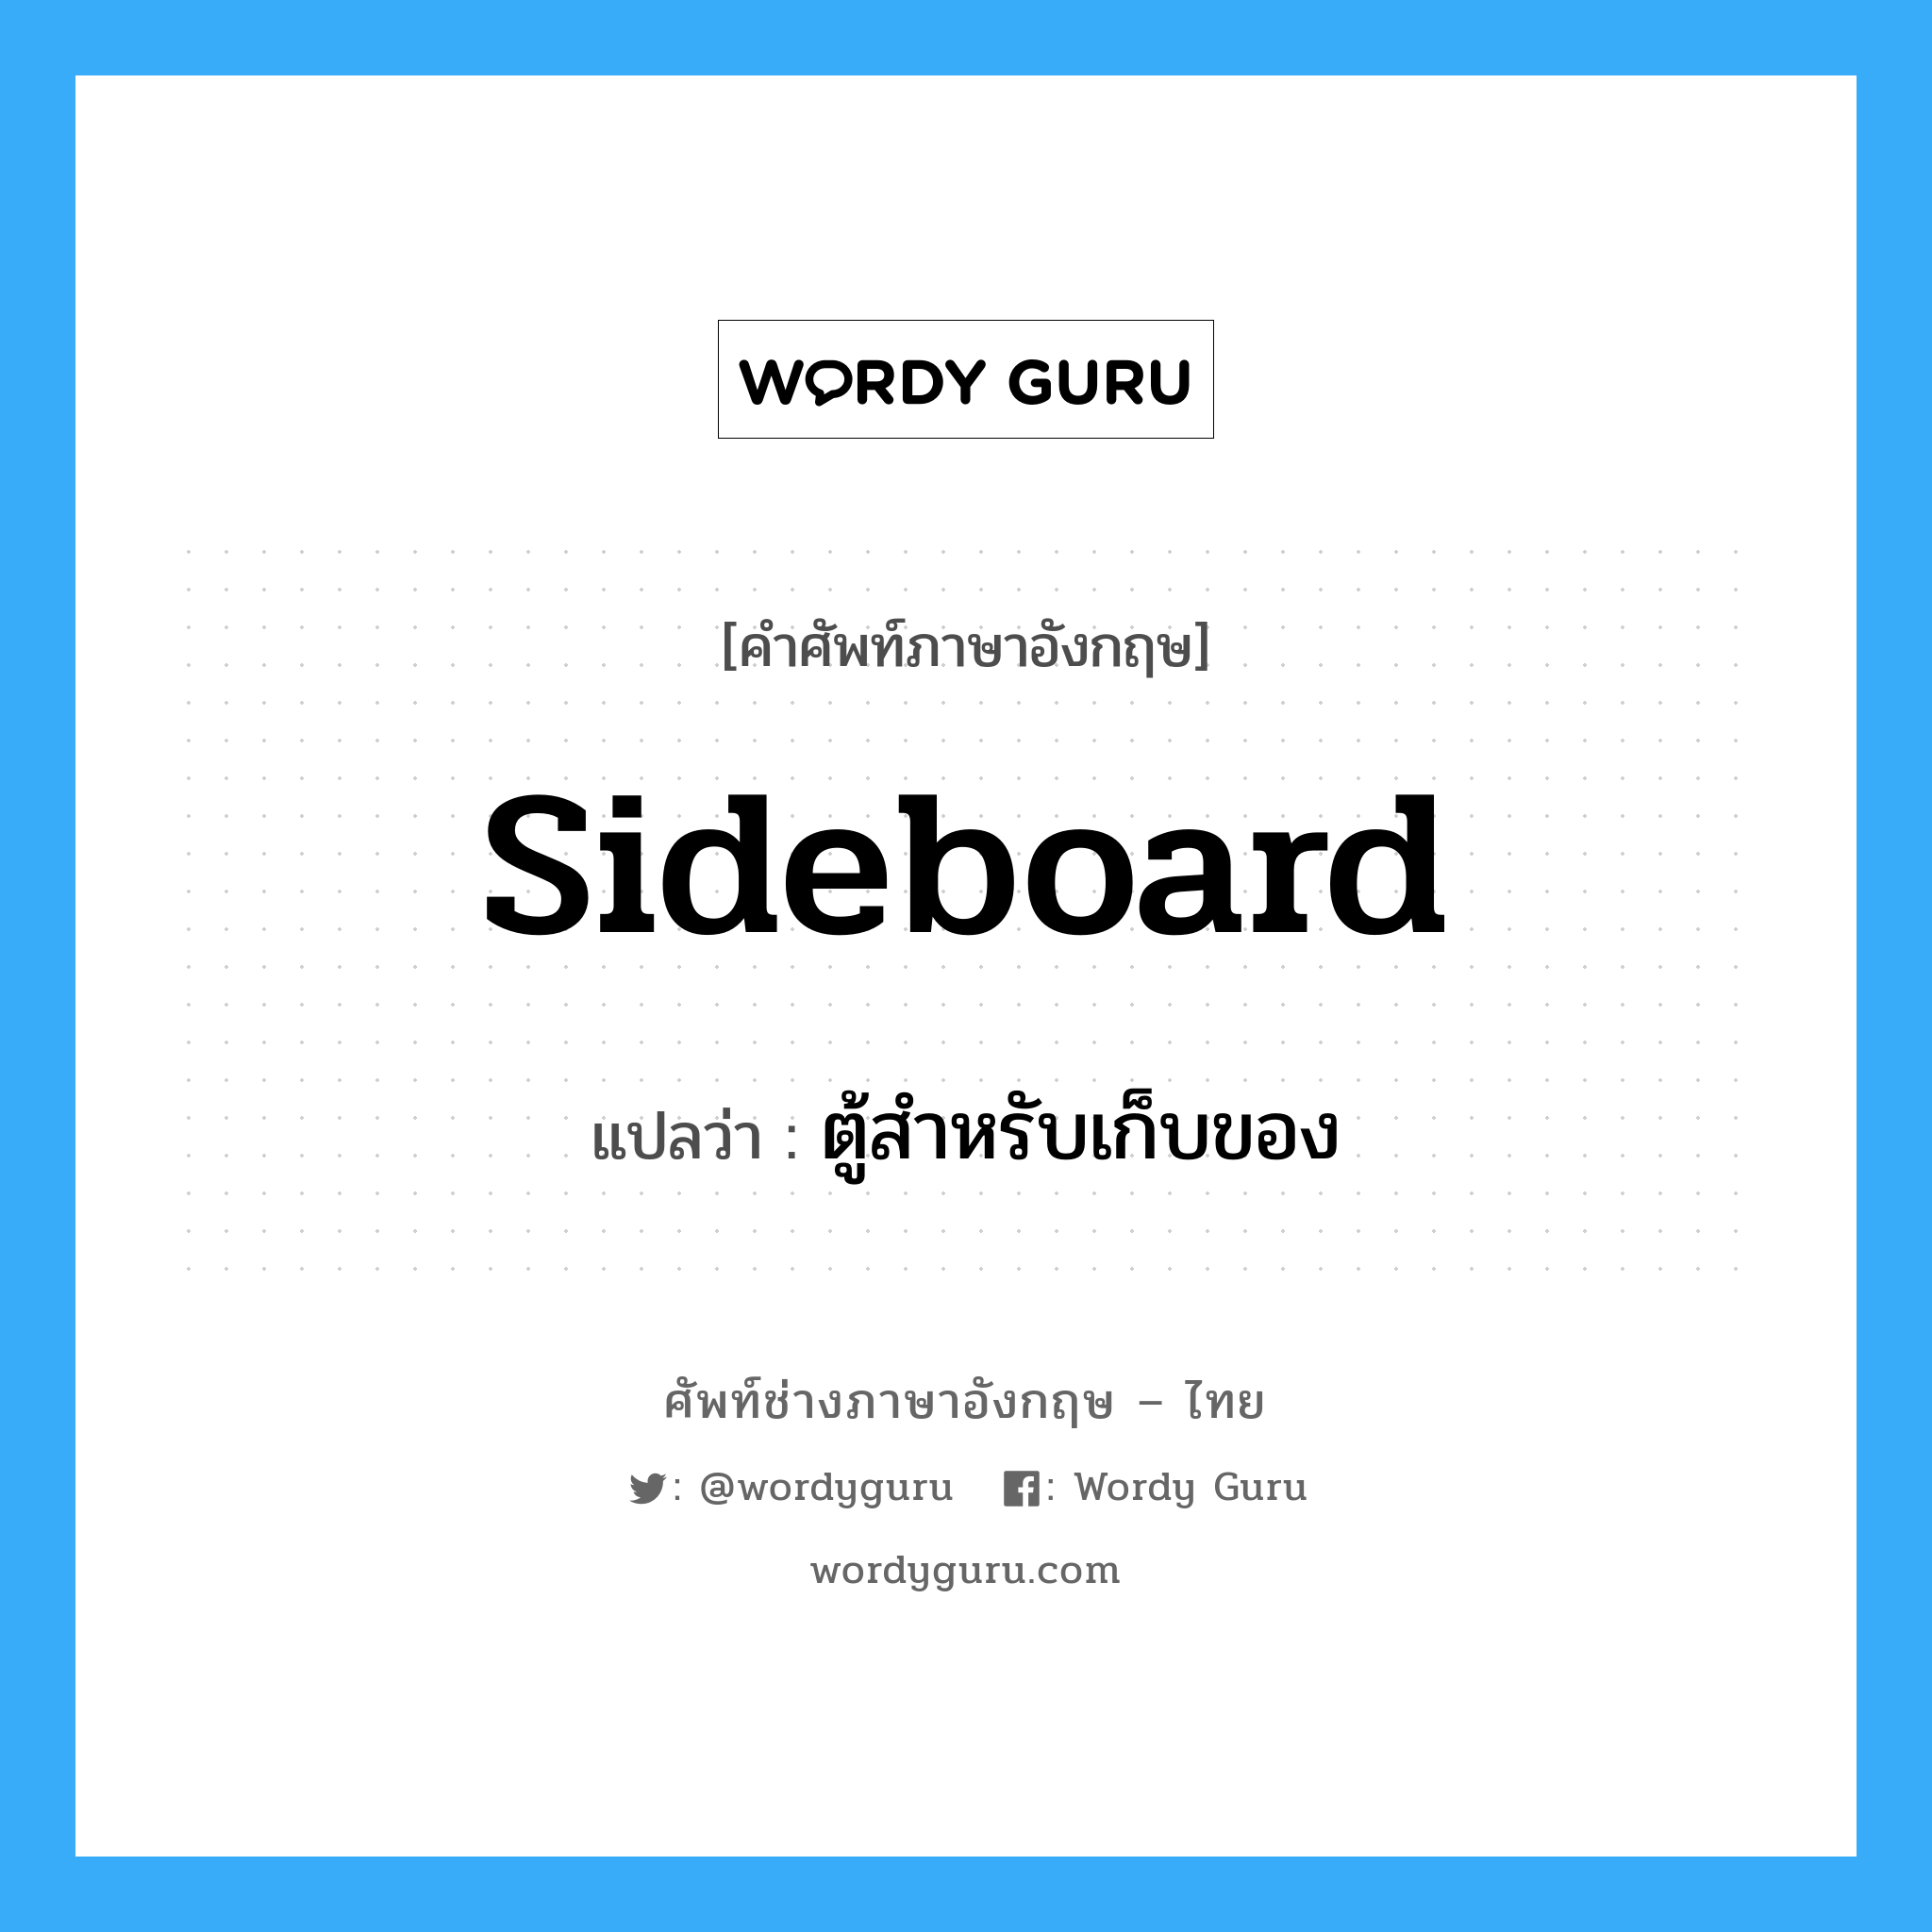 sideboard แปลว่า?, คำศัพท์ช่างภาษาอังกฤษ - ไทย sideboard คำศัพท์ภาษาอังกฤษ sideboard แปลว่า ตู้สำหรับเก็บของ